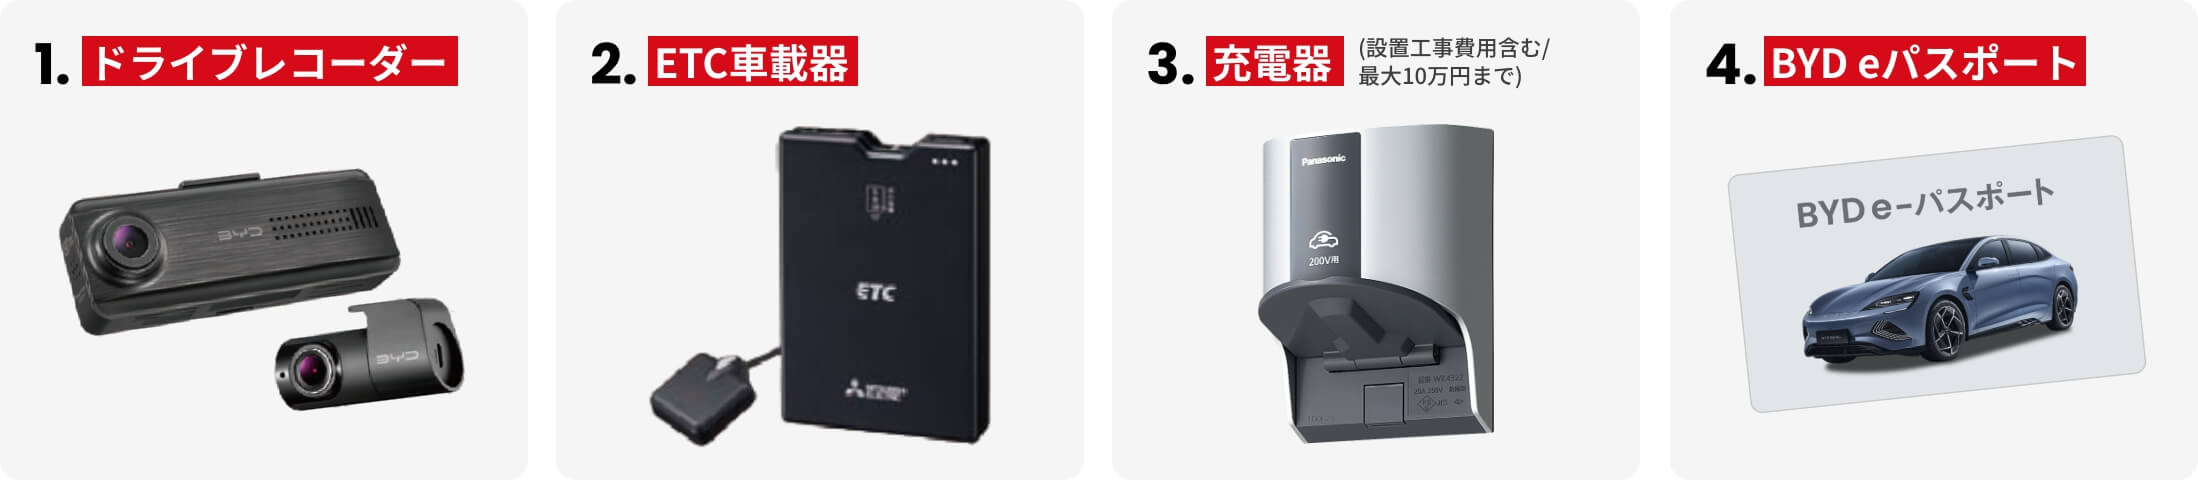 1.ドライブレコーダー 2.ETC車載器 3.充電器（設置工事費用含む/最大10万円まで） 4.BYD eパスポート